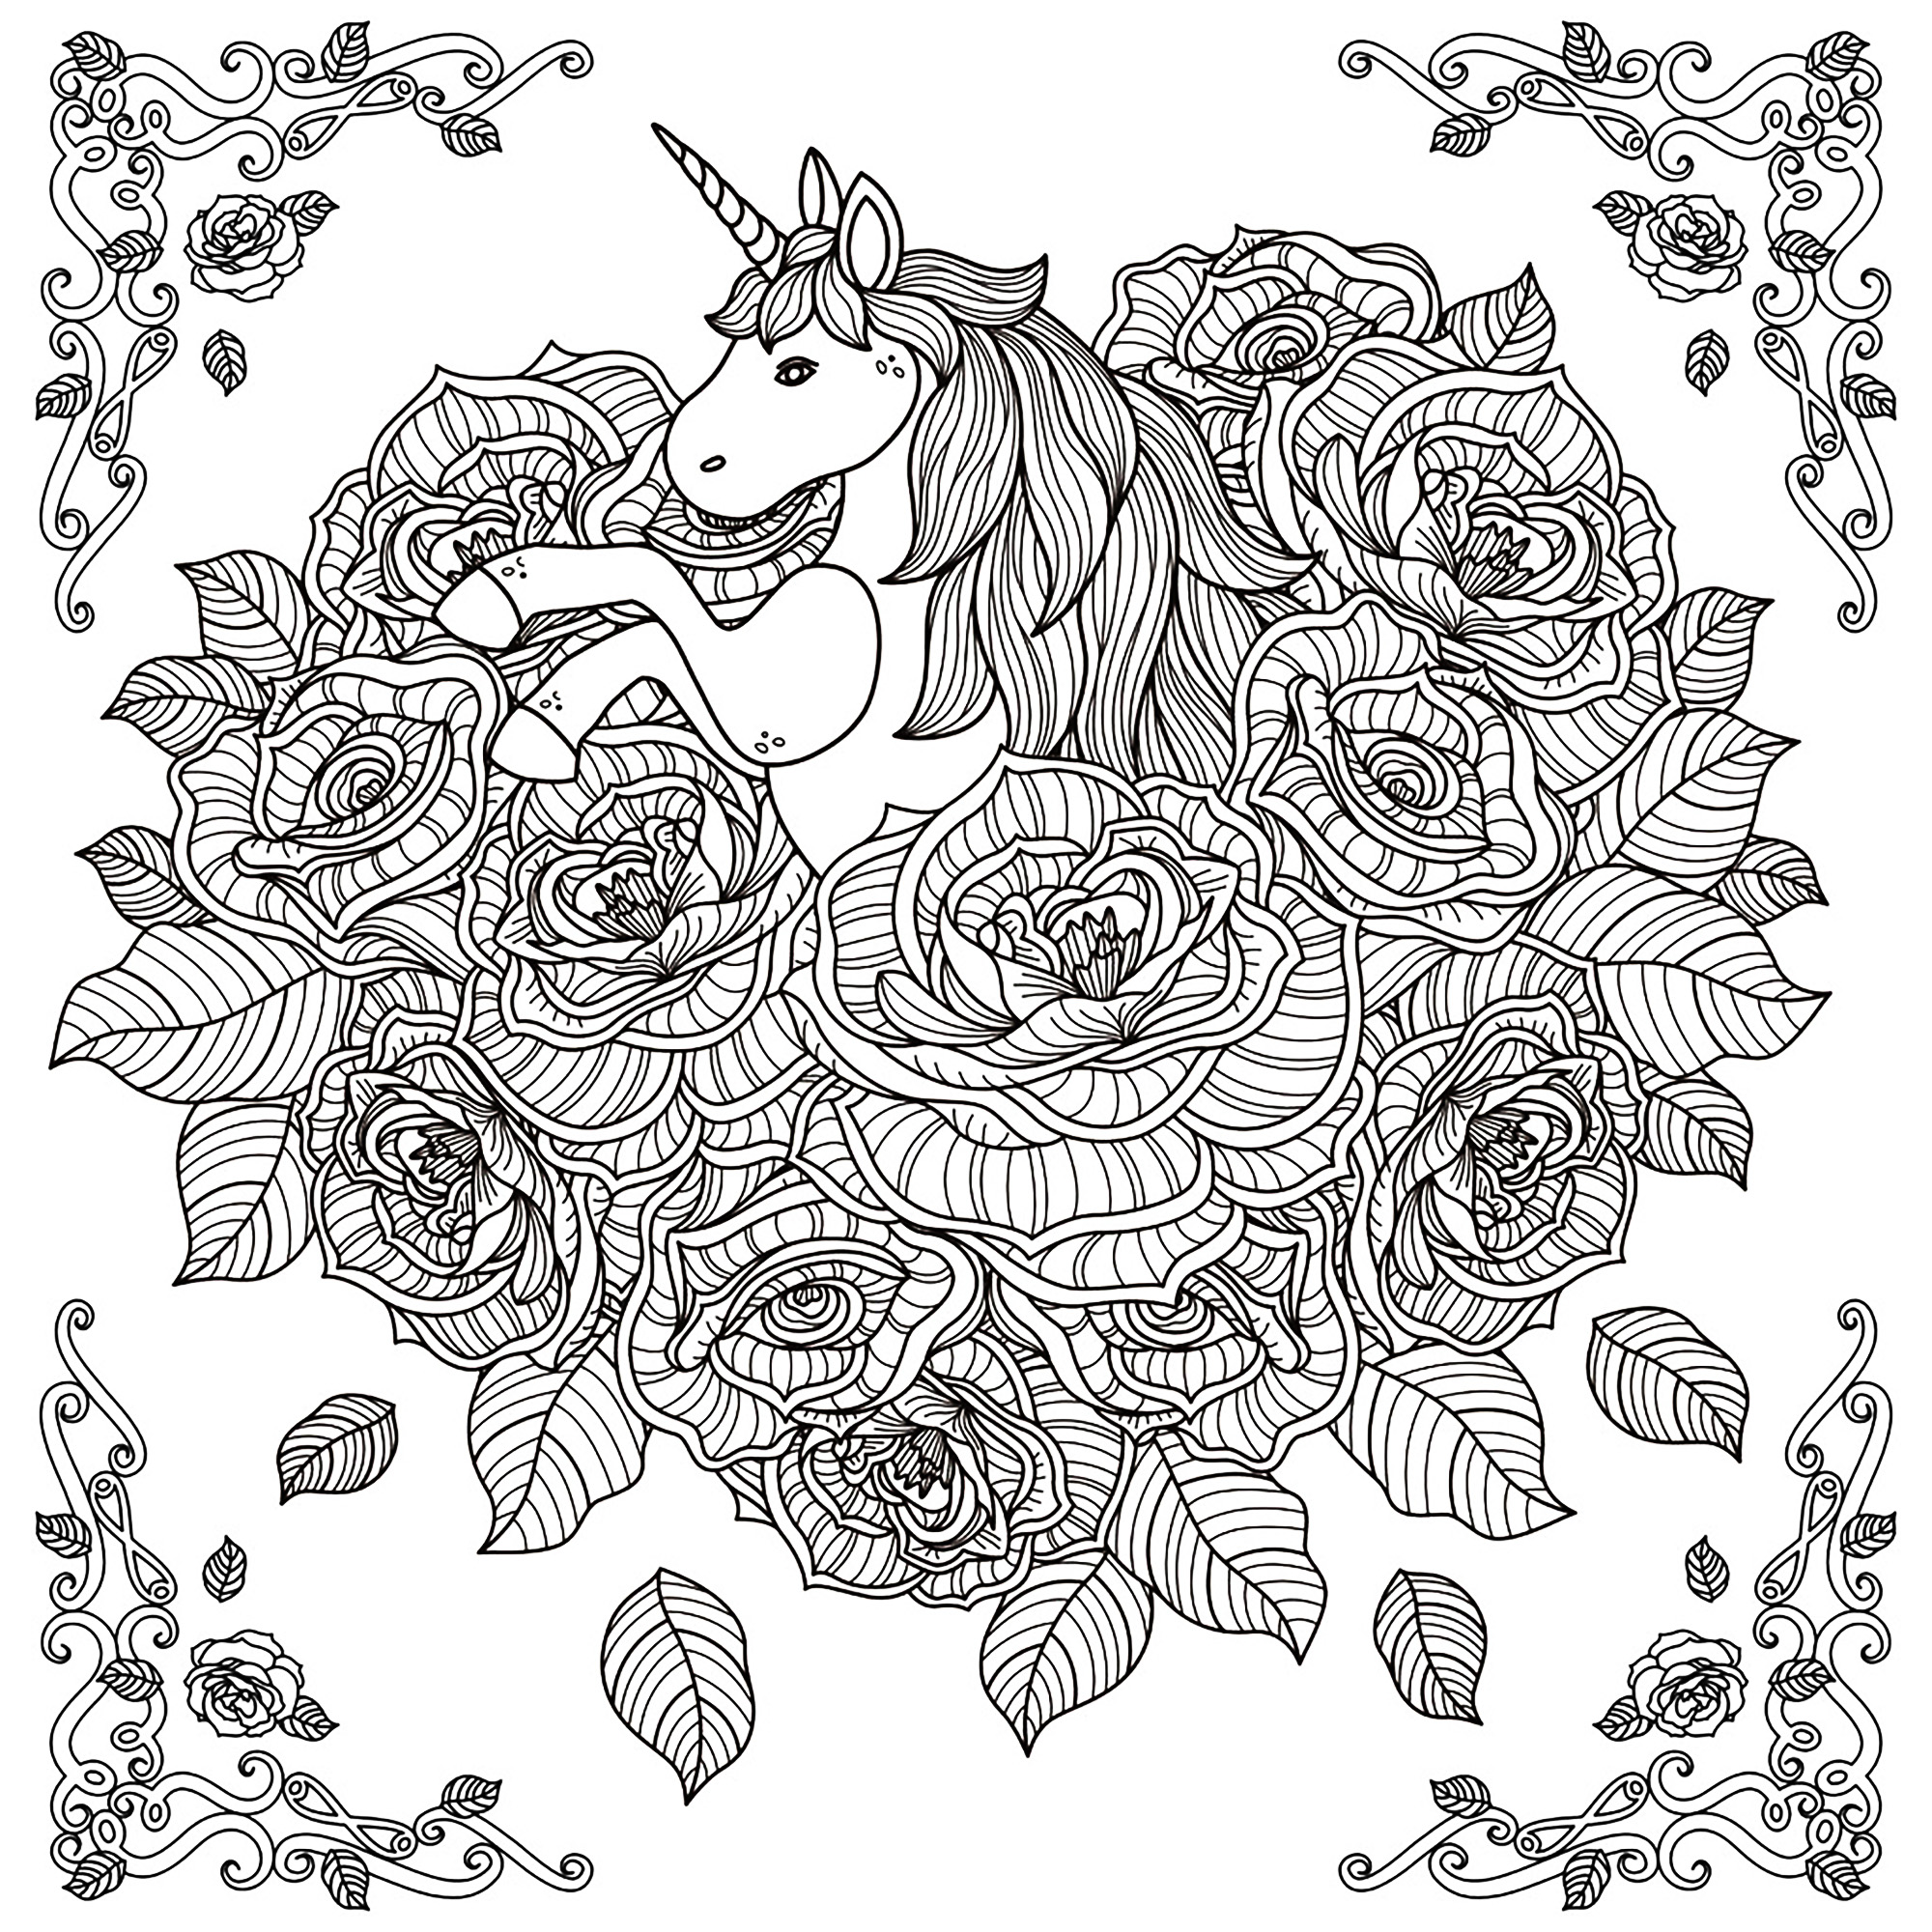 Magnifique licorne surgissant au milieu d'un amas de roses ... de quelle couleur ? à vous de décider, Artiste : Kchung   Source : 123rf